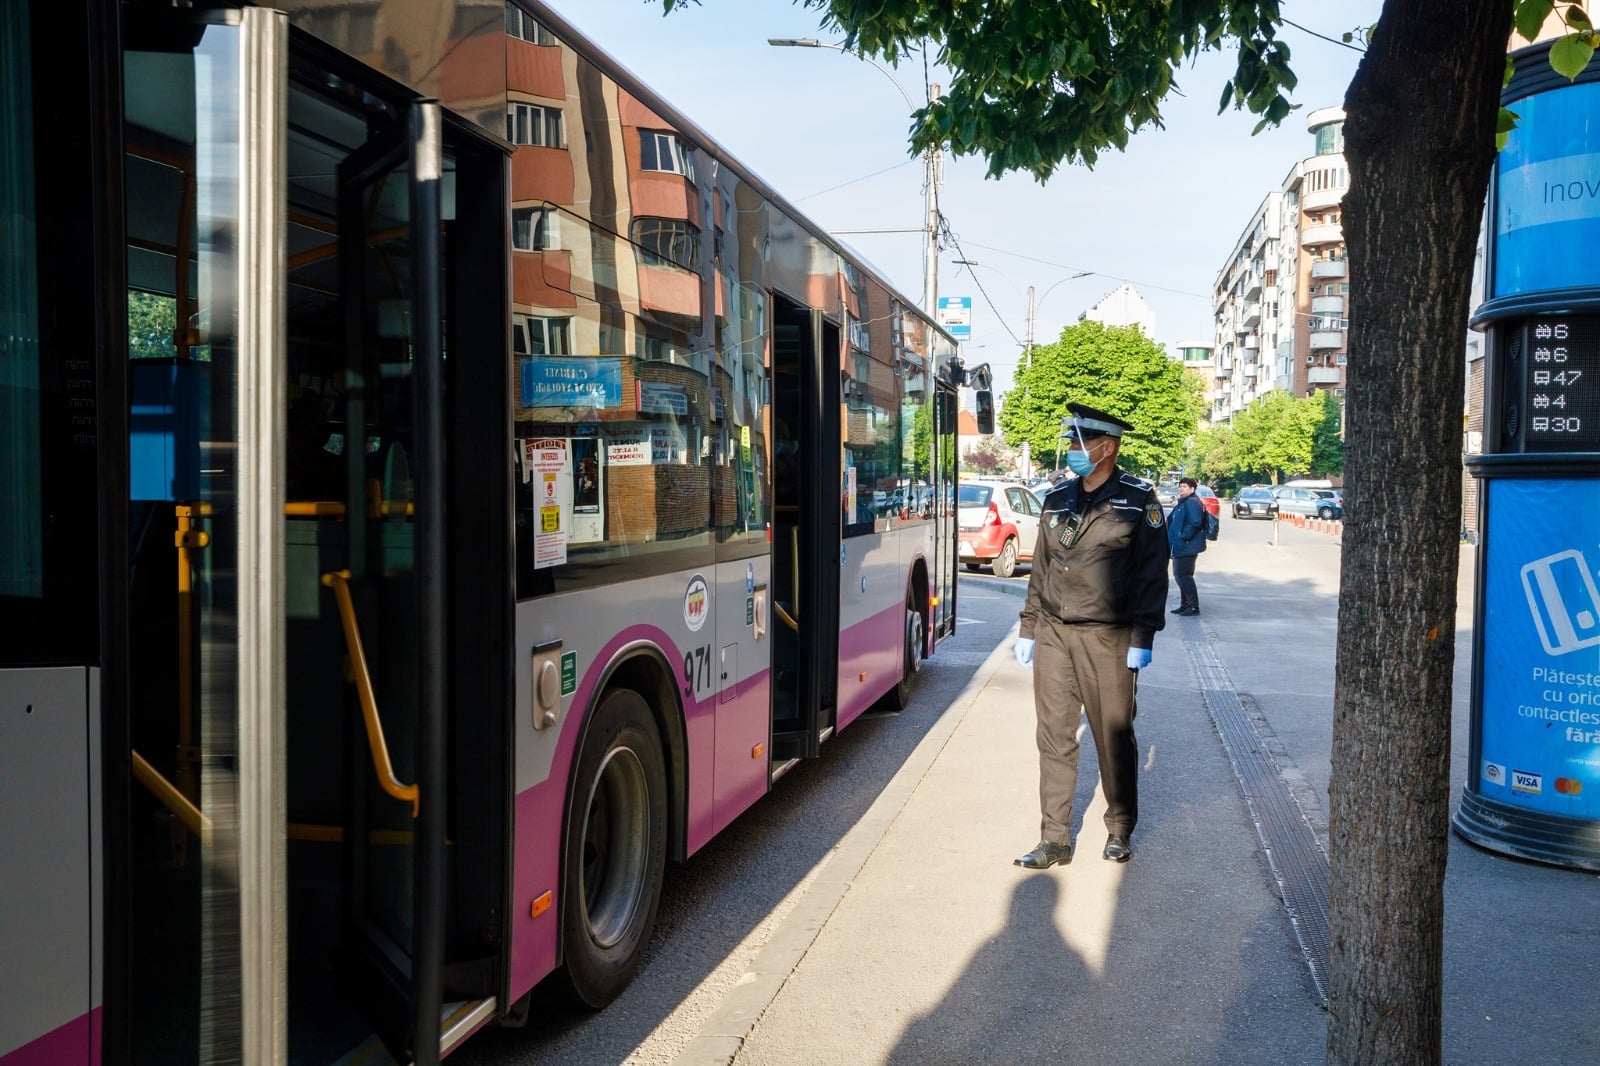 Atenție la hoții din autobuze! Doi bărbați din Cluj-Napoca au profitat de neatenţia unei femei şi i-au furat telefonul mobil